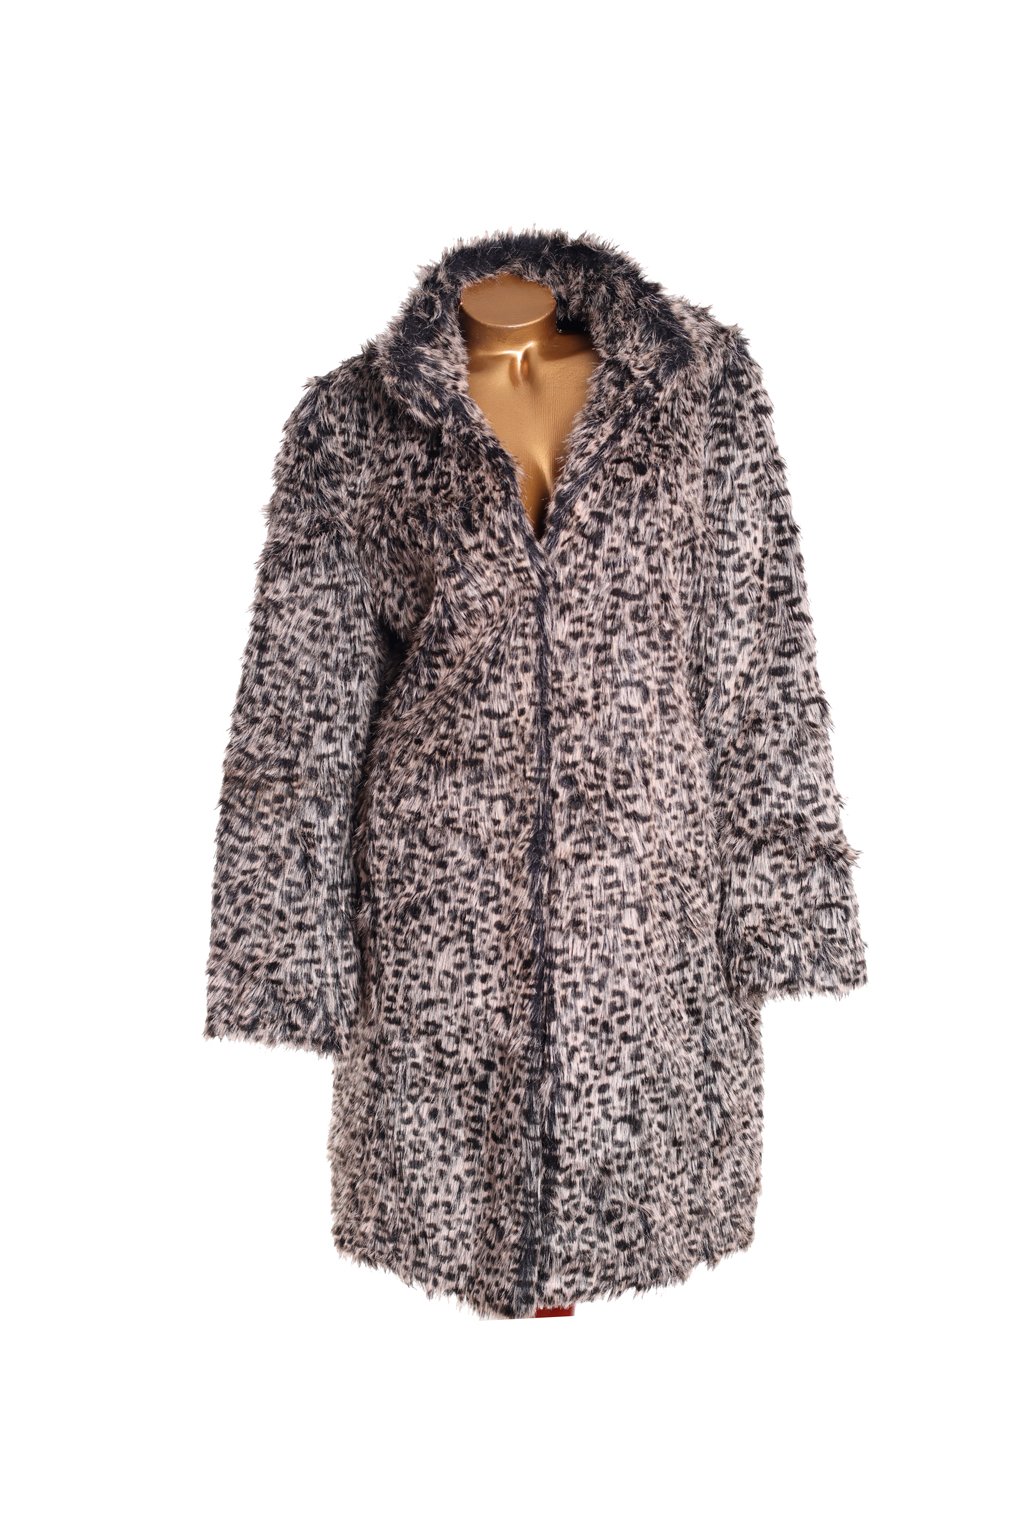 Dámský béžovo-černý kožešinový kabát s leopardím vzorem / M&Co / XXXL (48) / ANGLIE